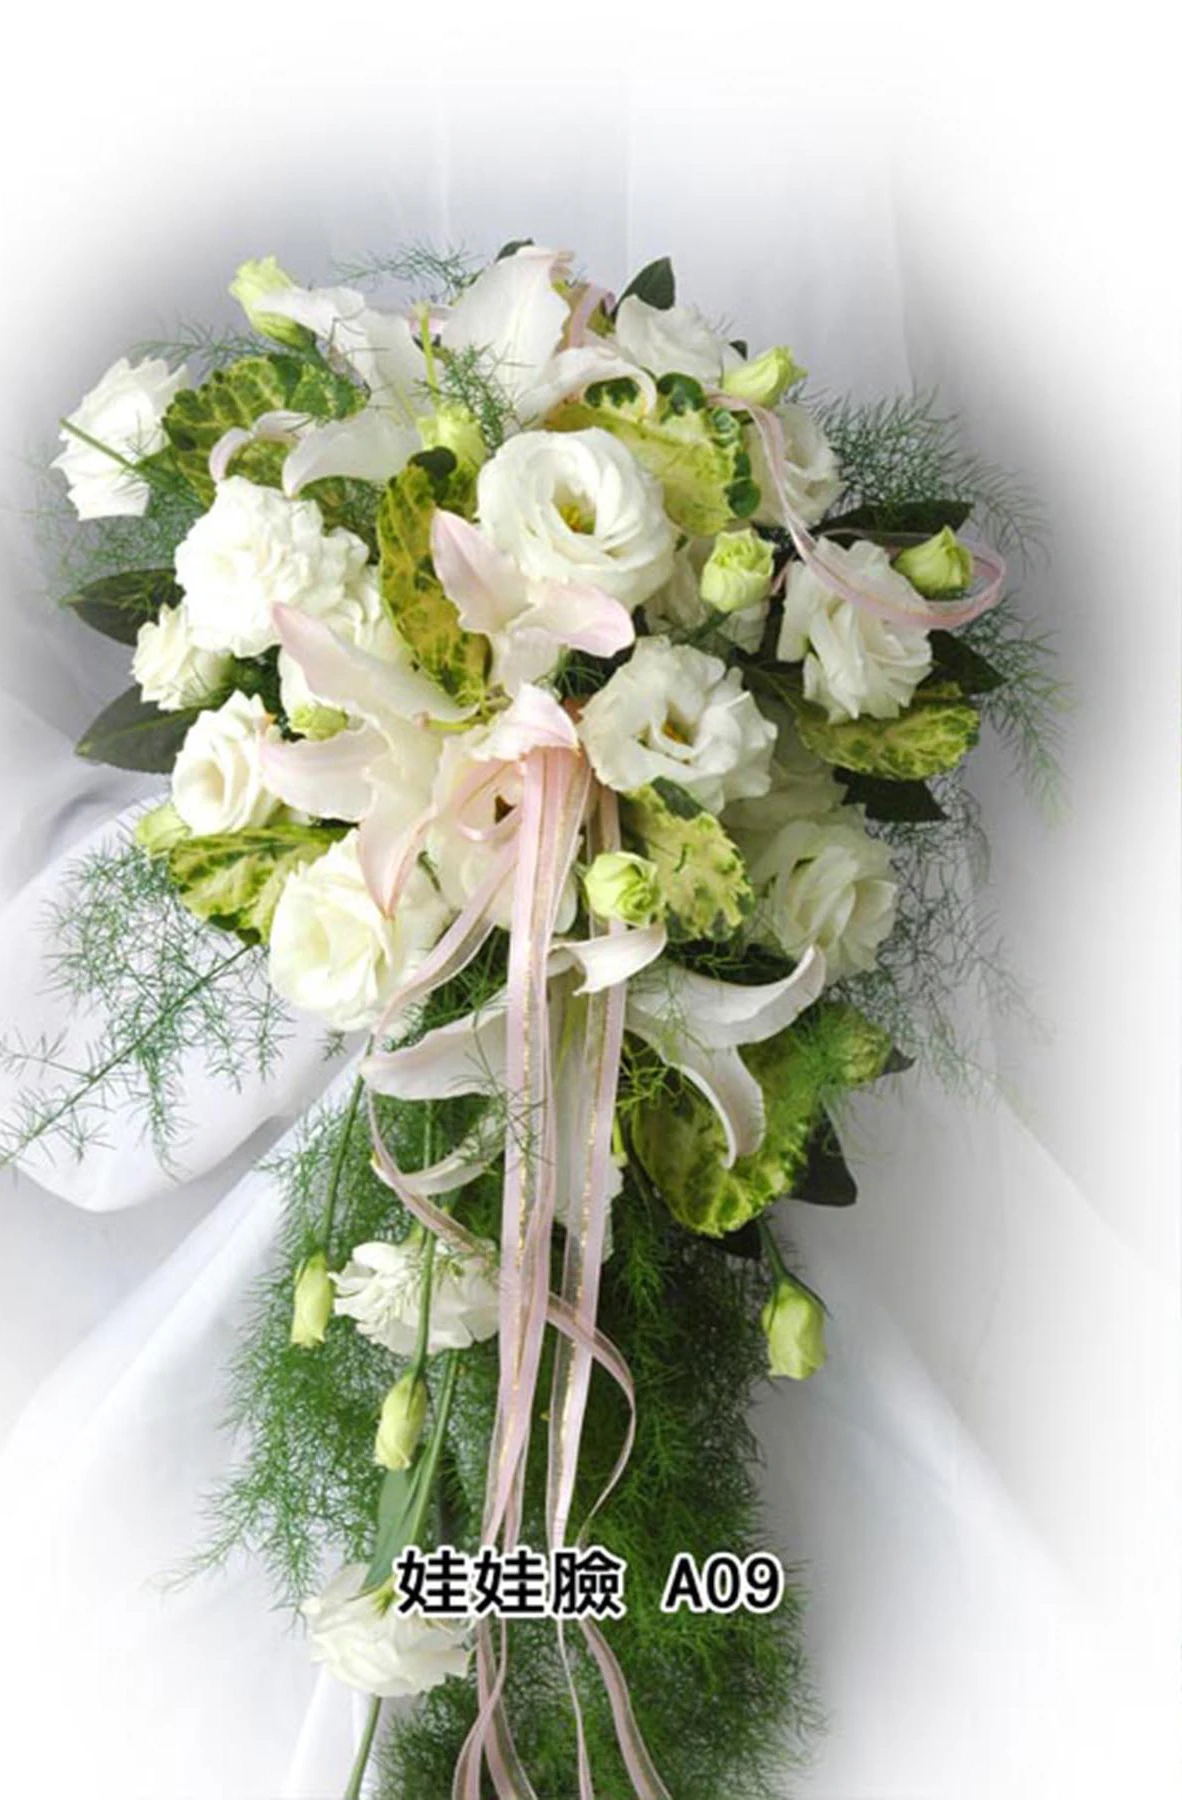 新娘捧花-花材有白玫瑰花,桔梗,新娘草,花束型